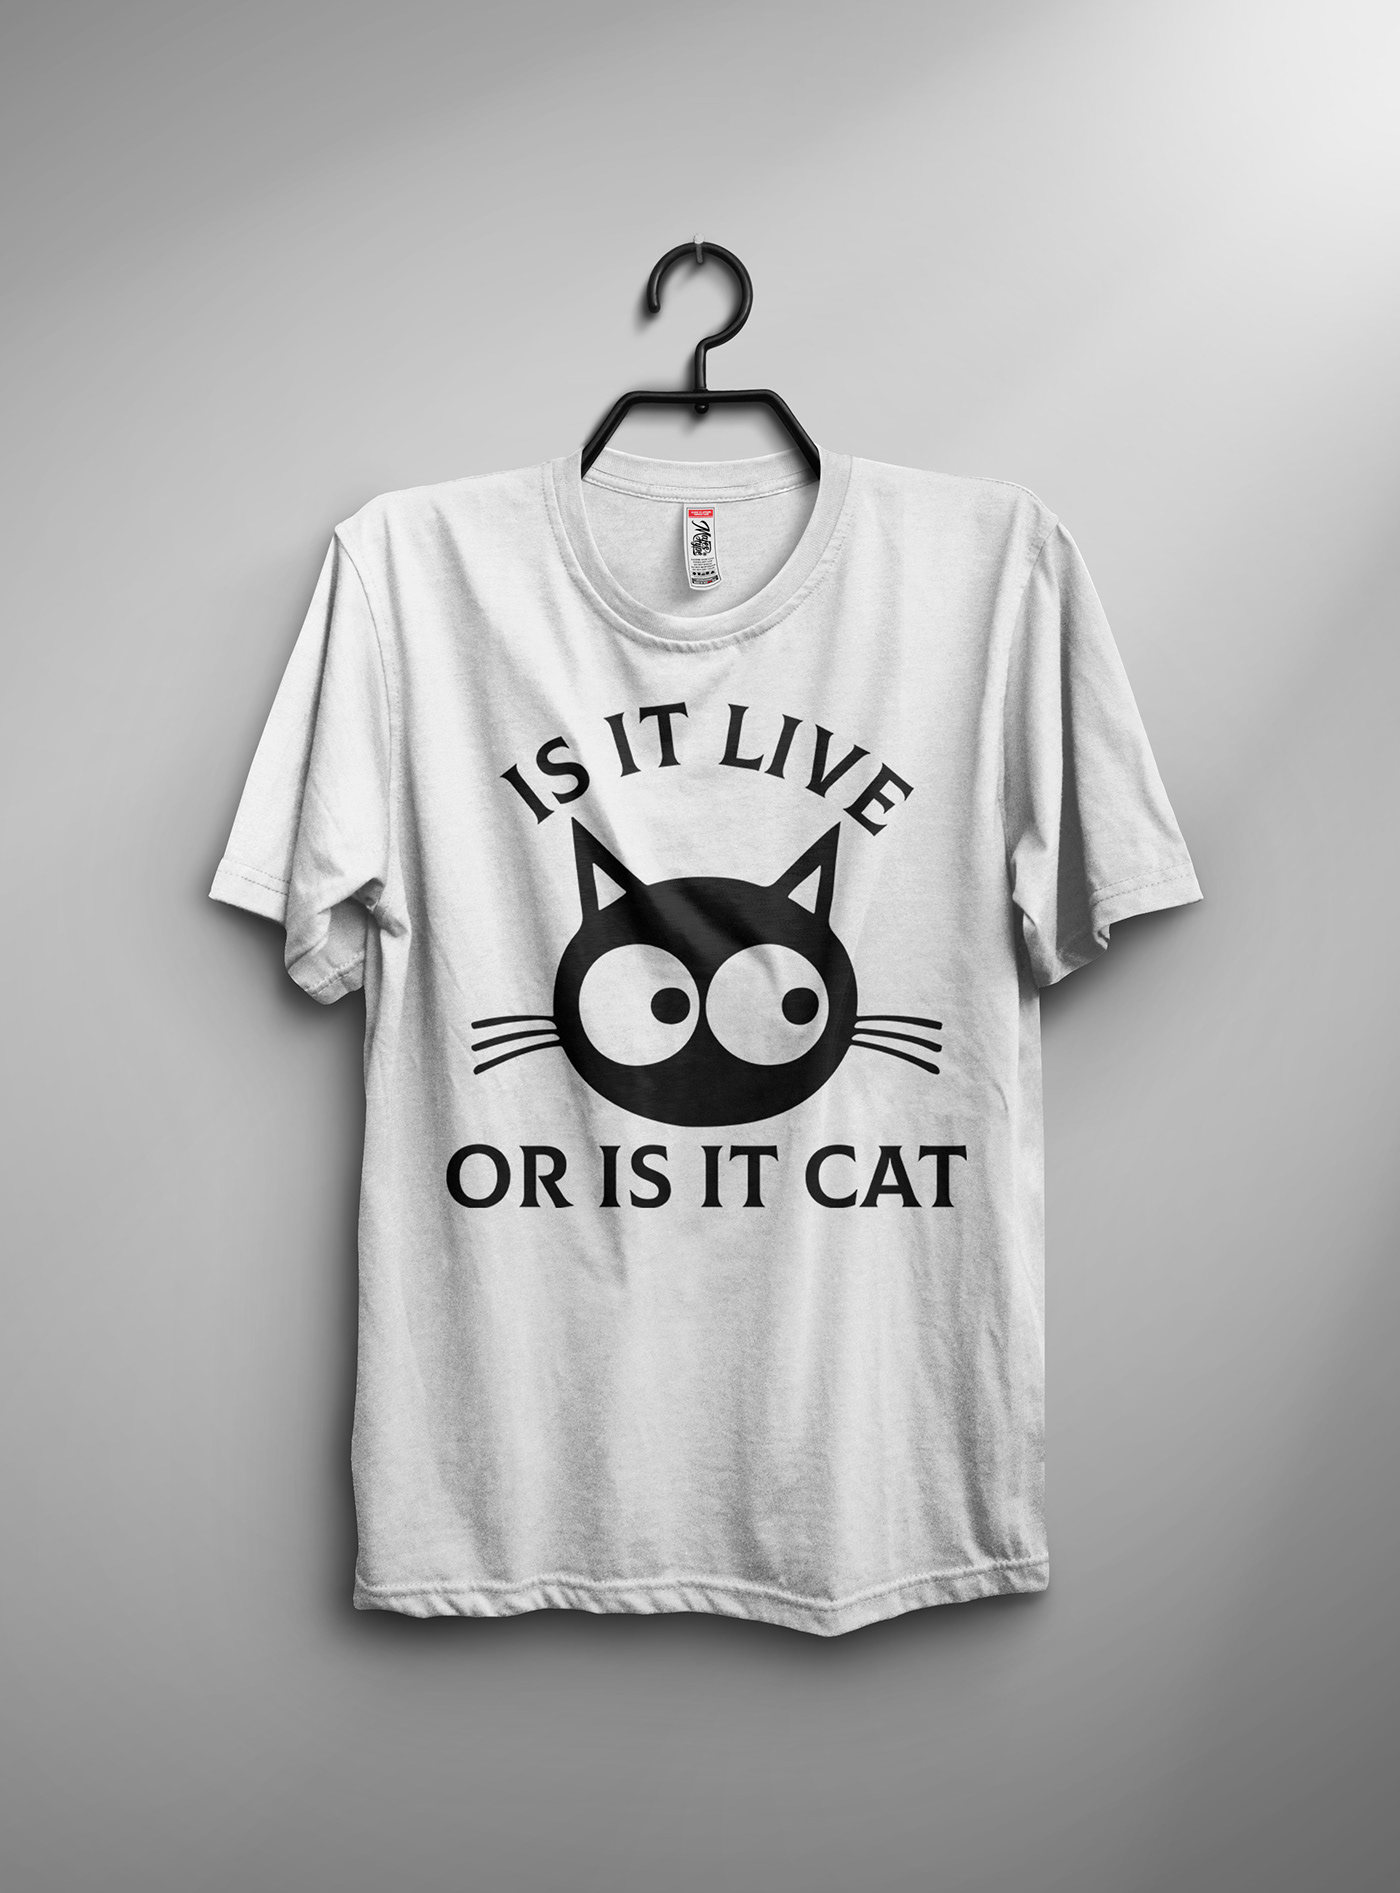 bundle t-shirt cat t-shirt t-shirt T-Shirt Design T-Shirt Design ideas t-shirts tshirt design bundle